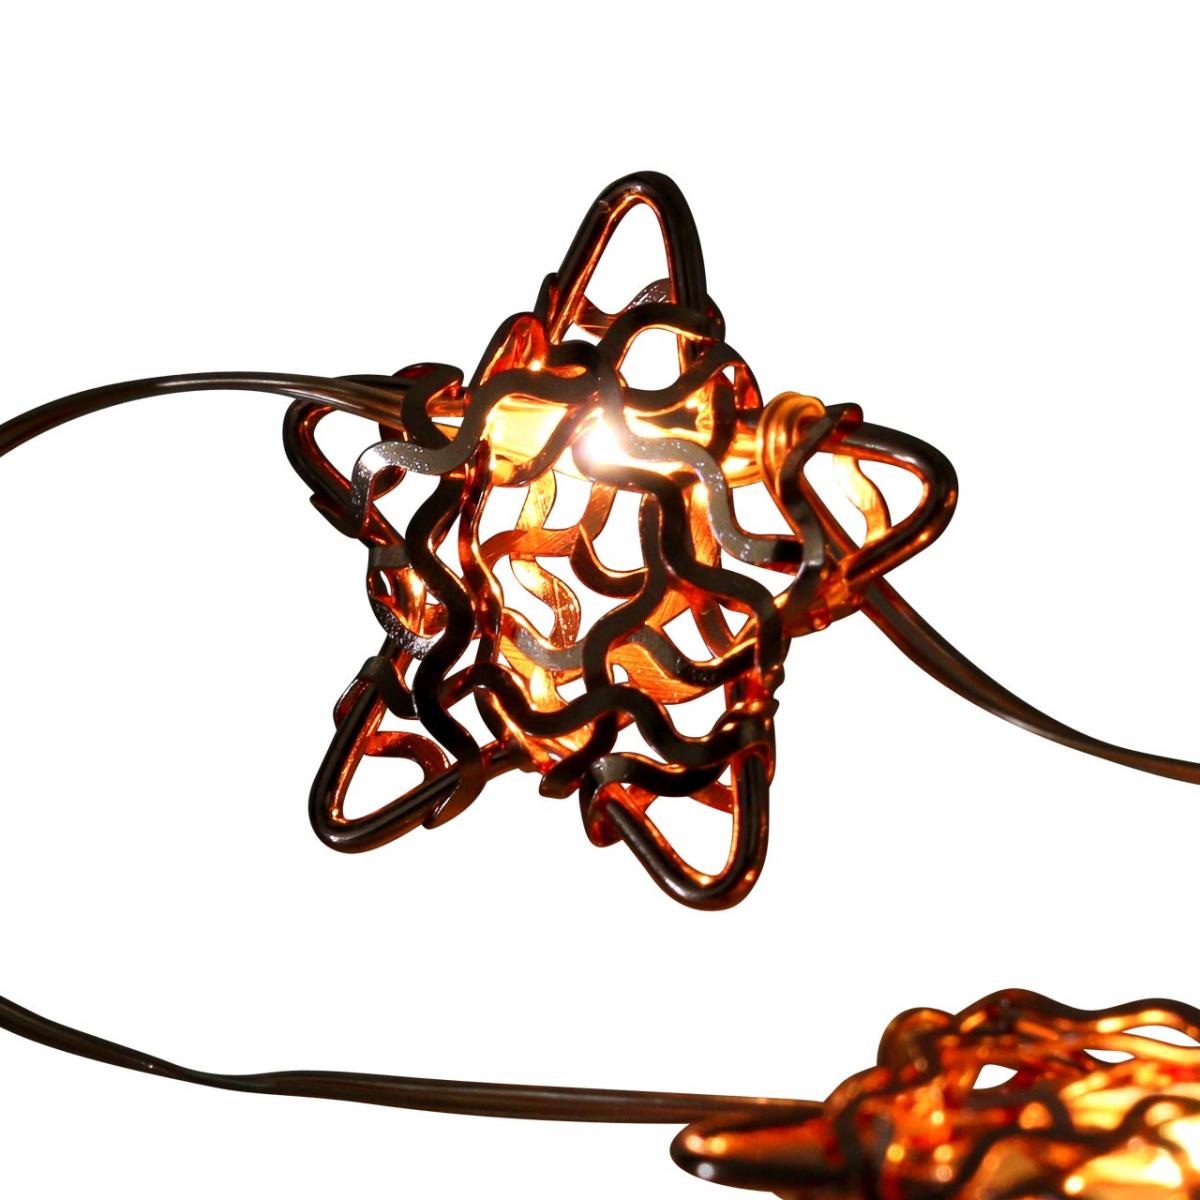 Décoration lumineuse en forme d'étoile avec micro leds.